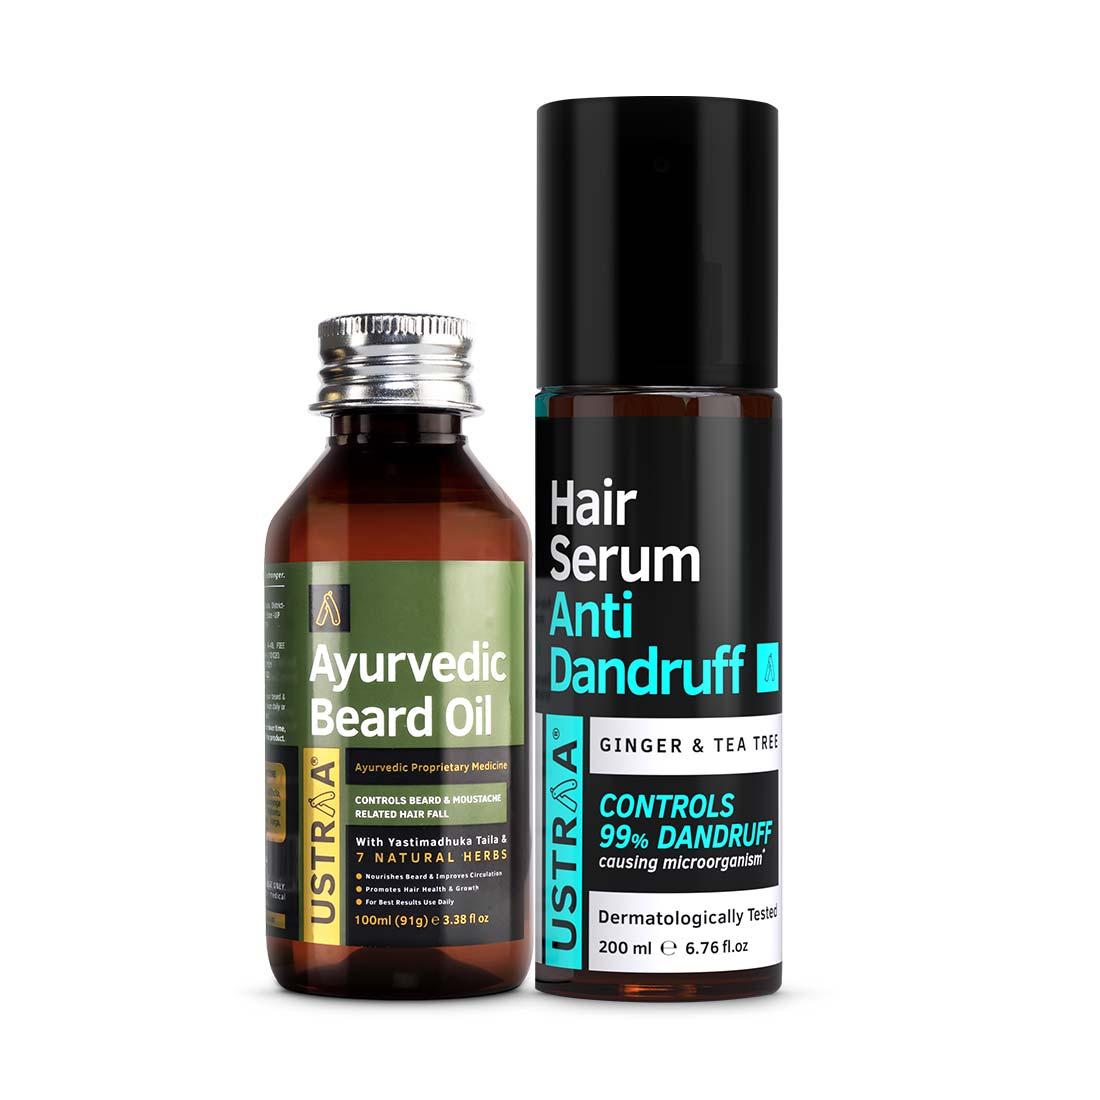 Ayurvedic Beard Oil & Anti Dandruff Serum